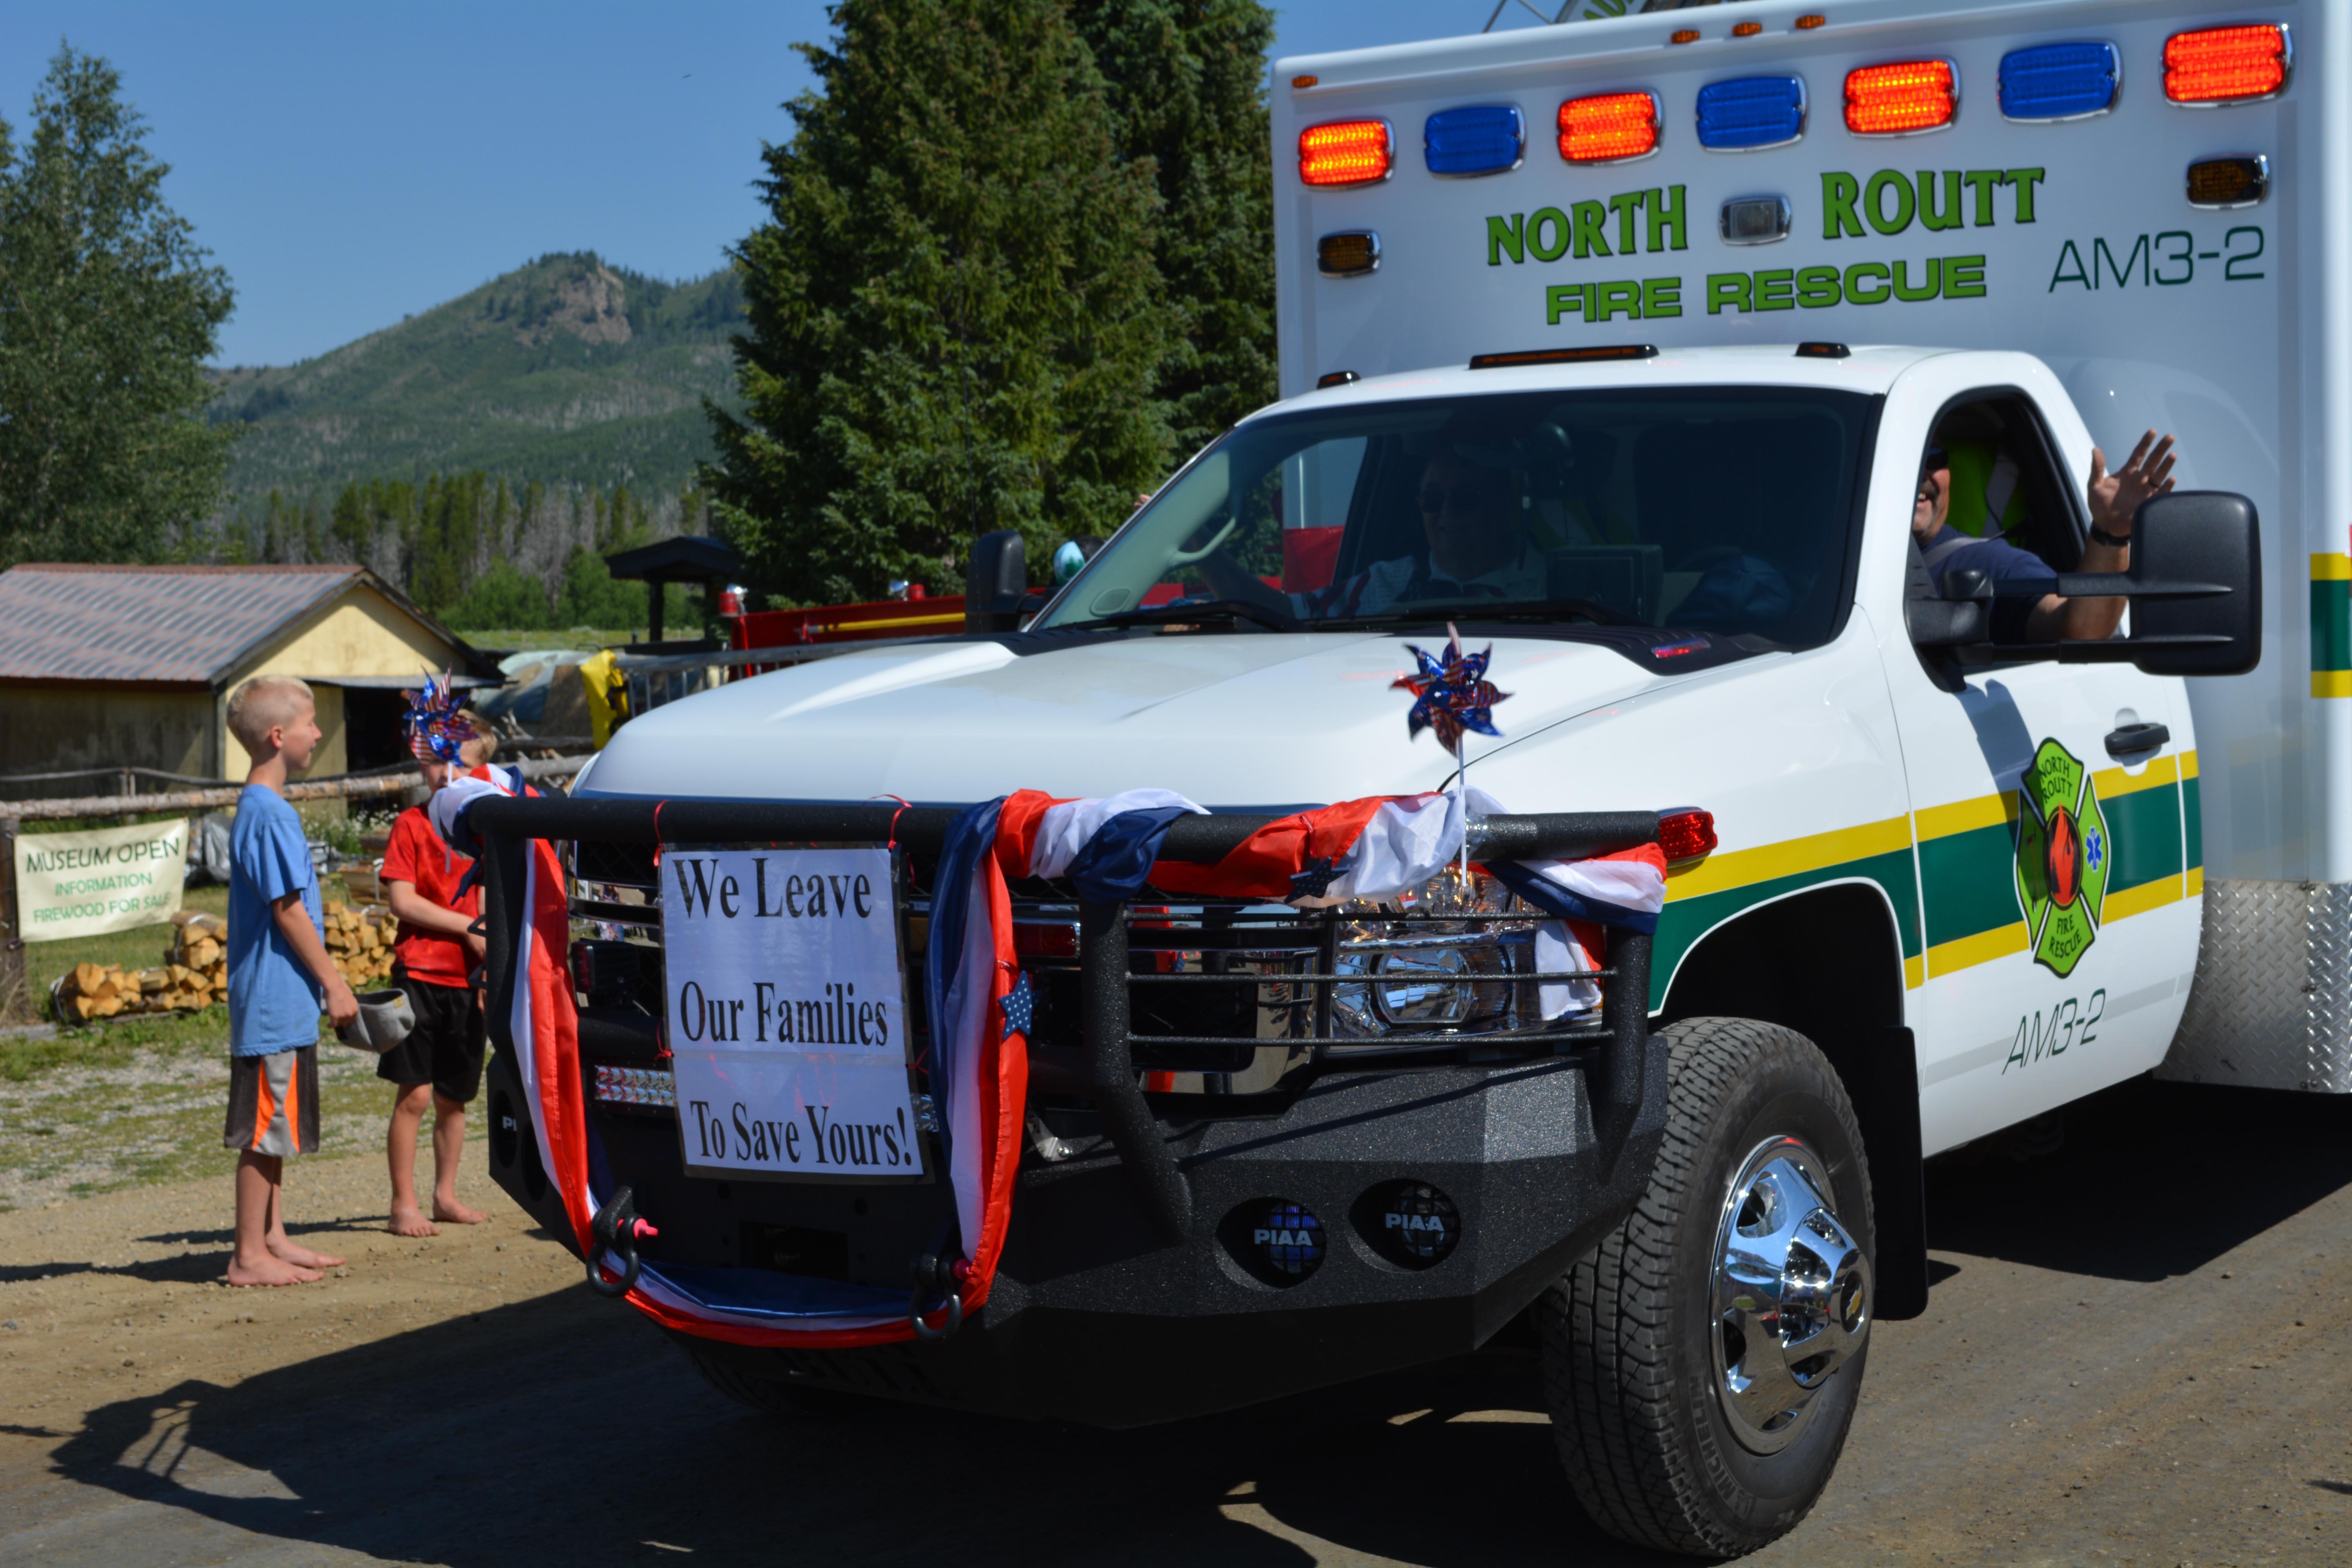 North Routt Fire Rescue Ambulance